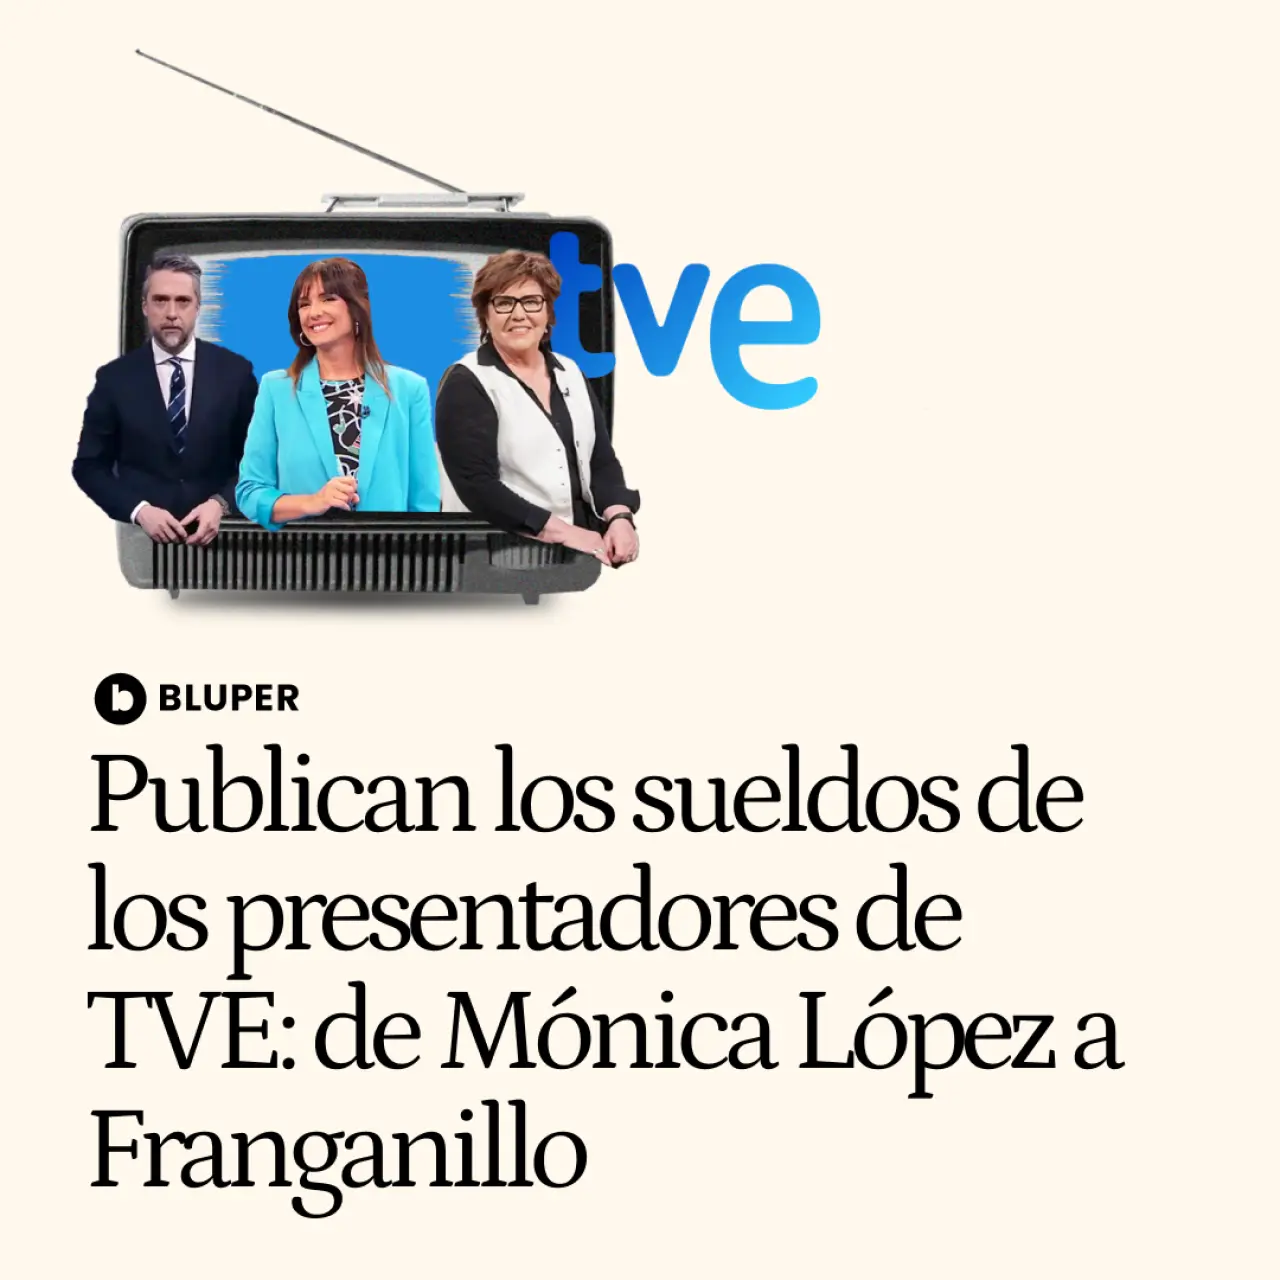 Desvelados los sueldos de los presentadores de TVE: de Carlos Franganillo a Mónica López y María Escario